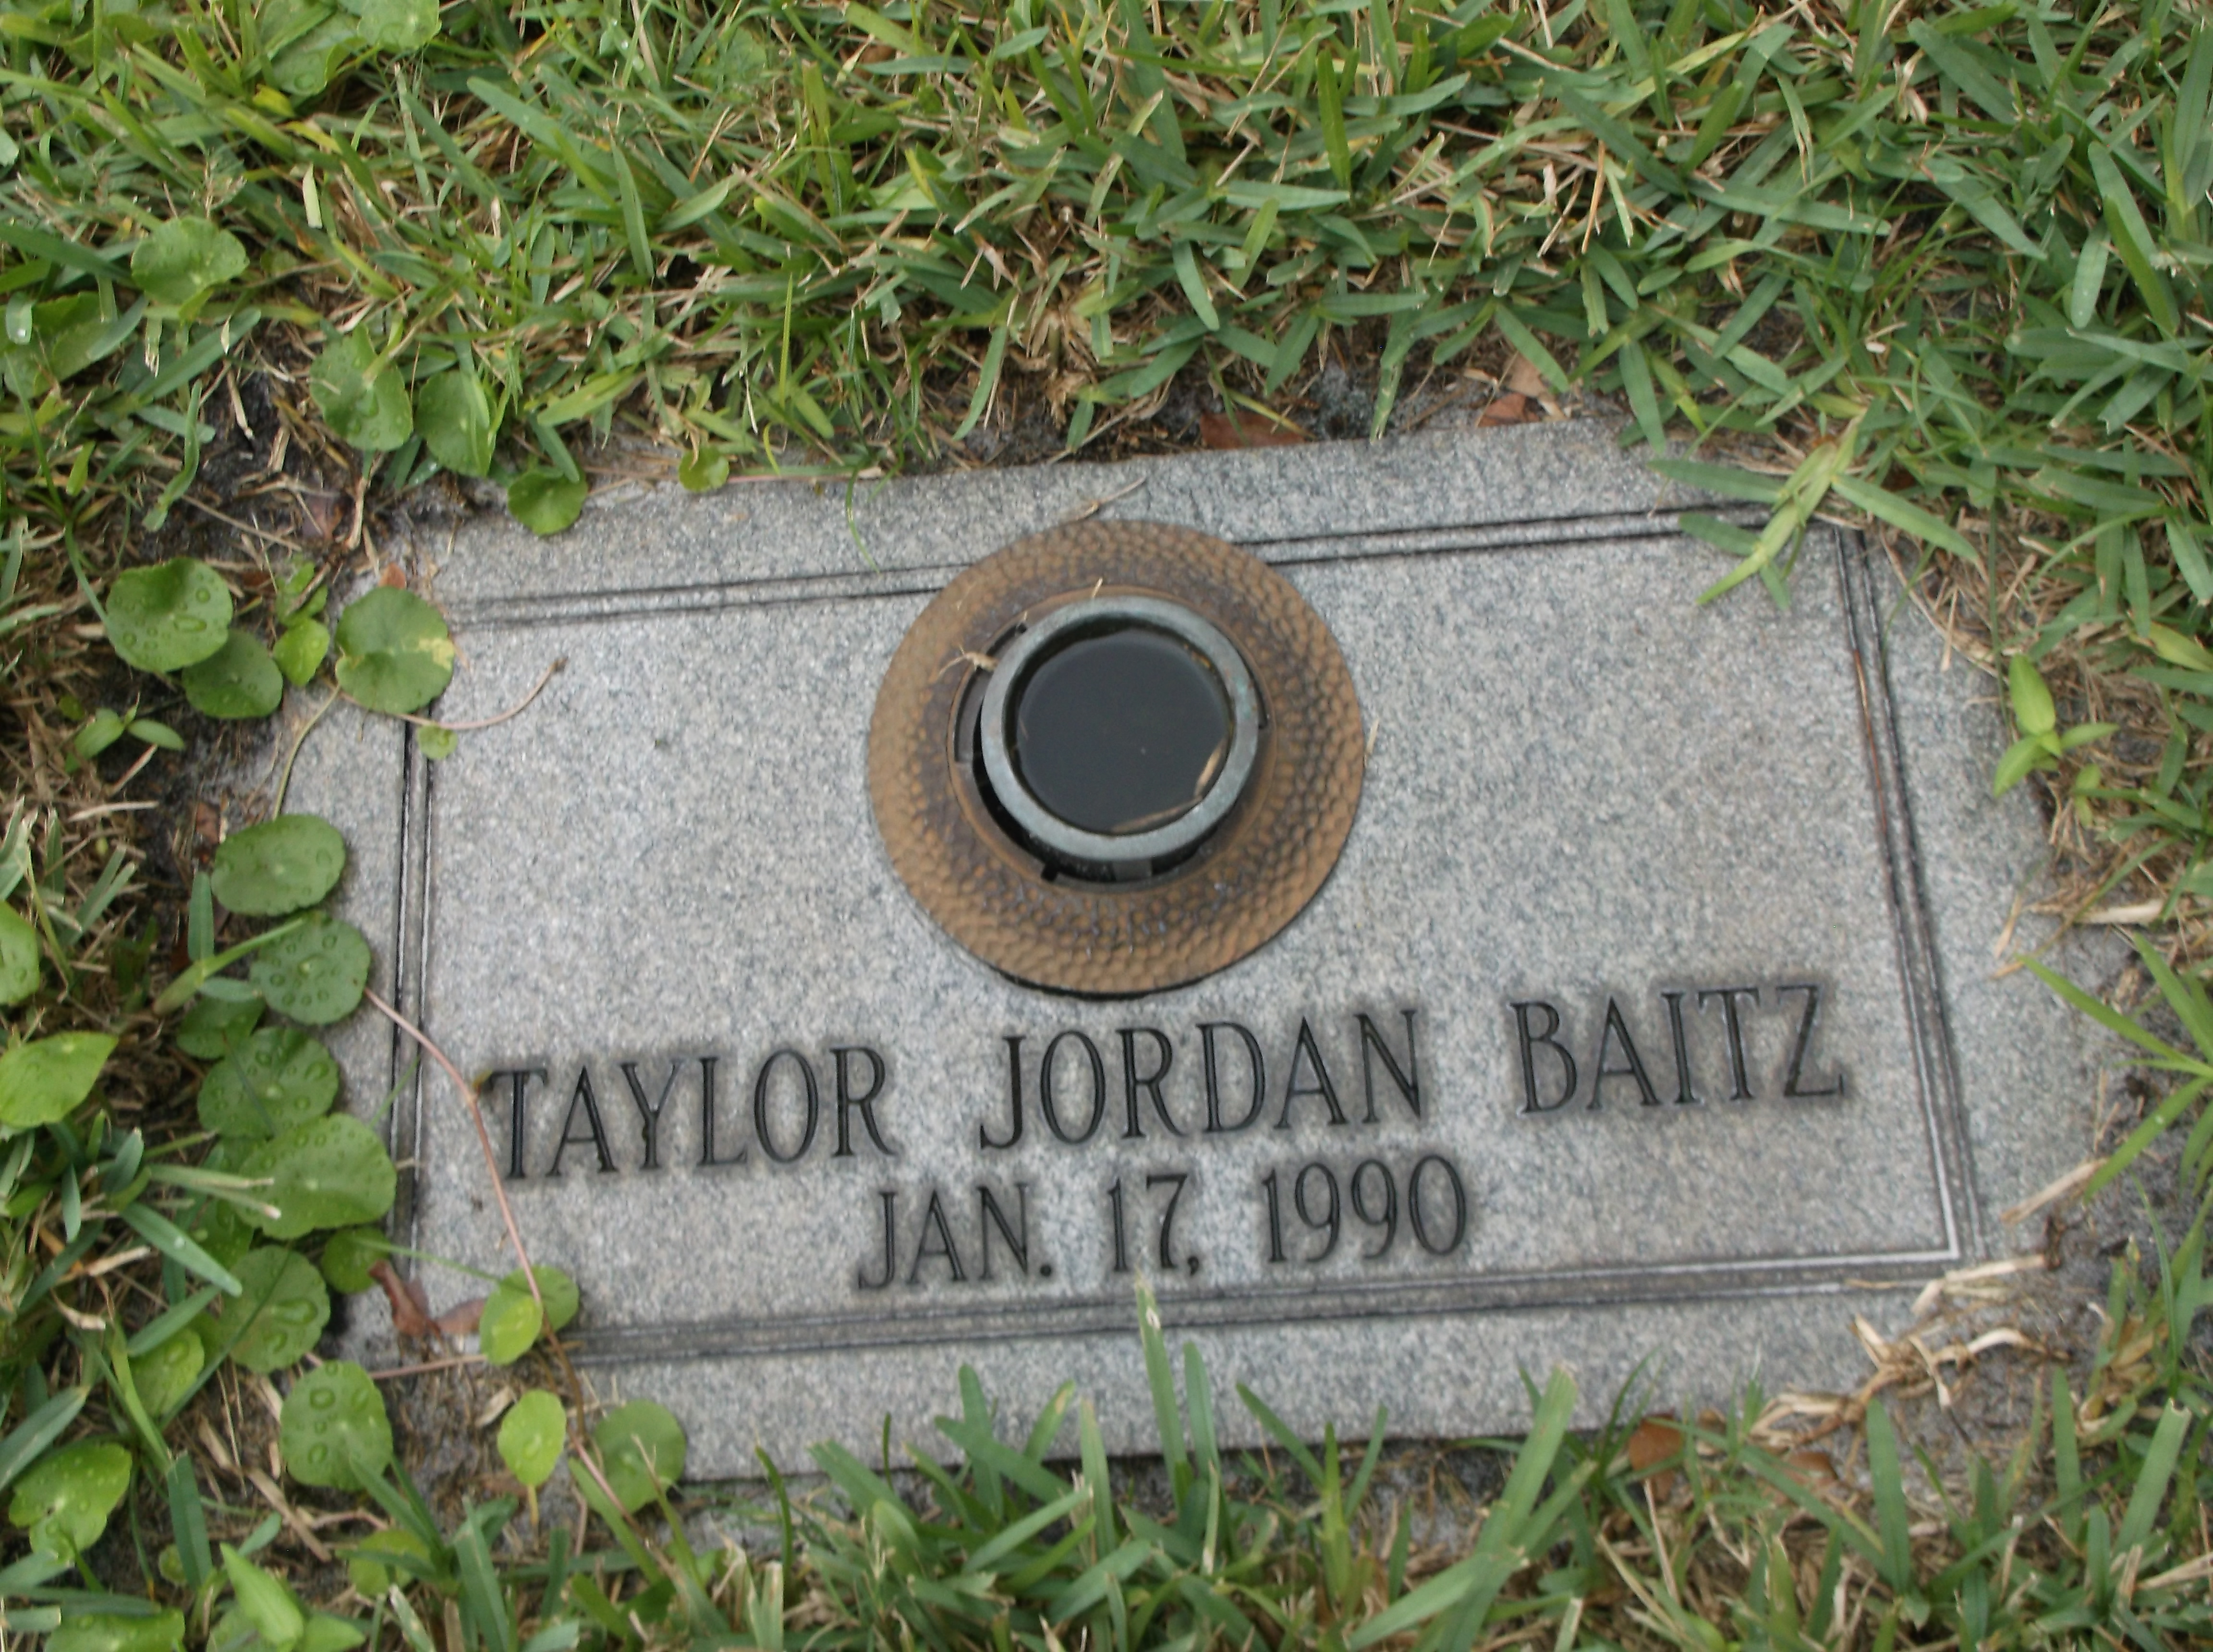 Taylor Jordan Baitz